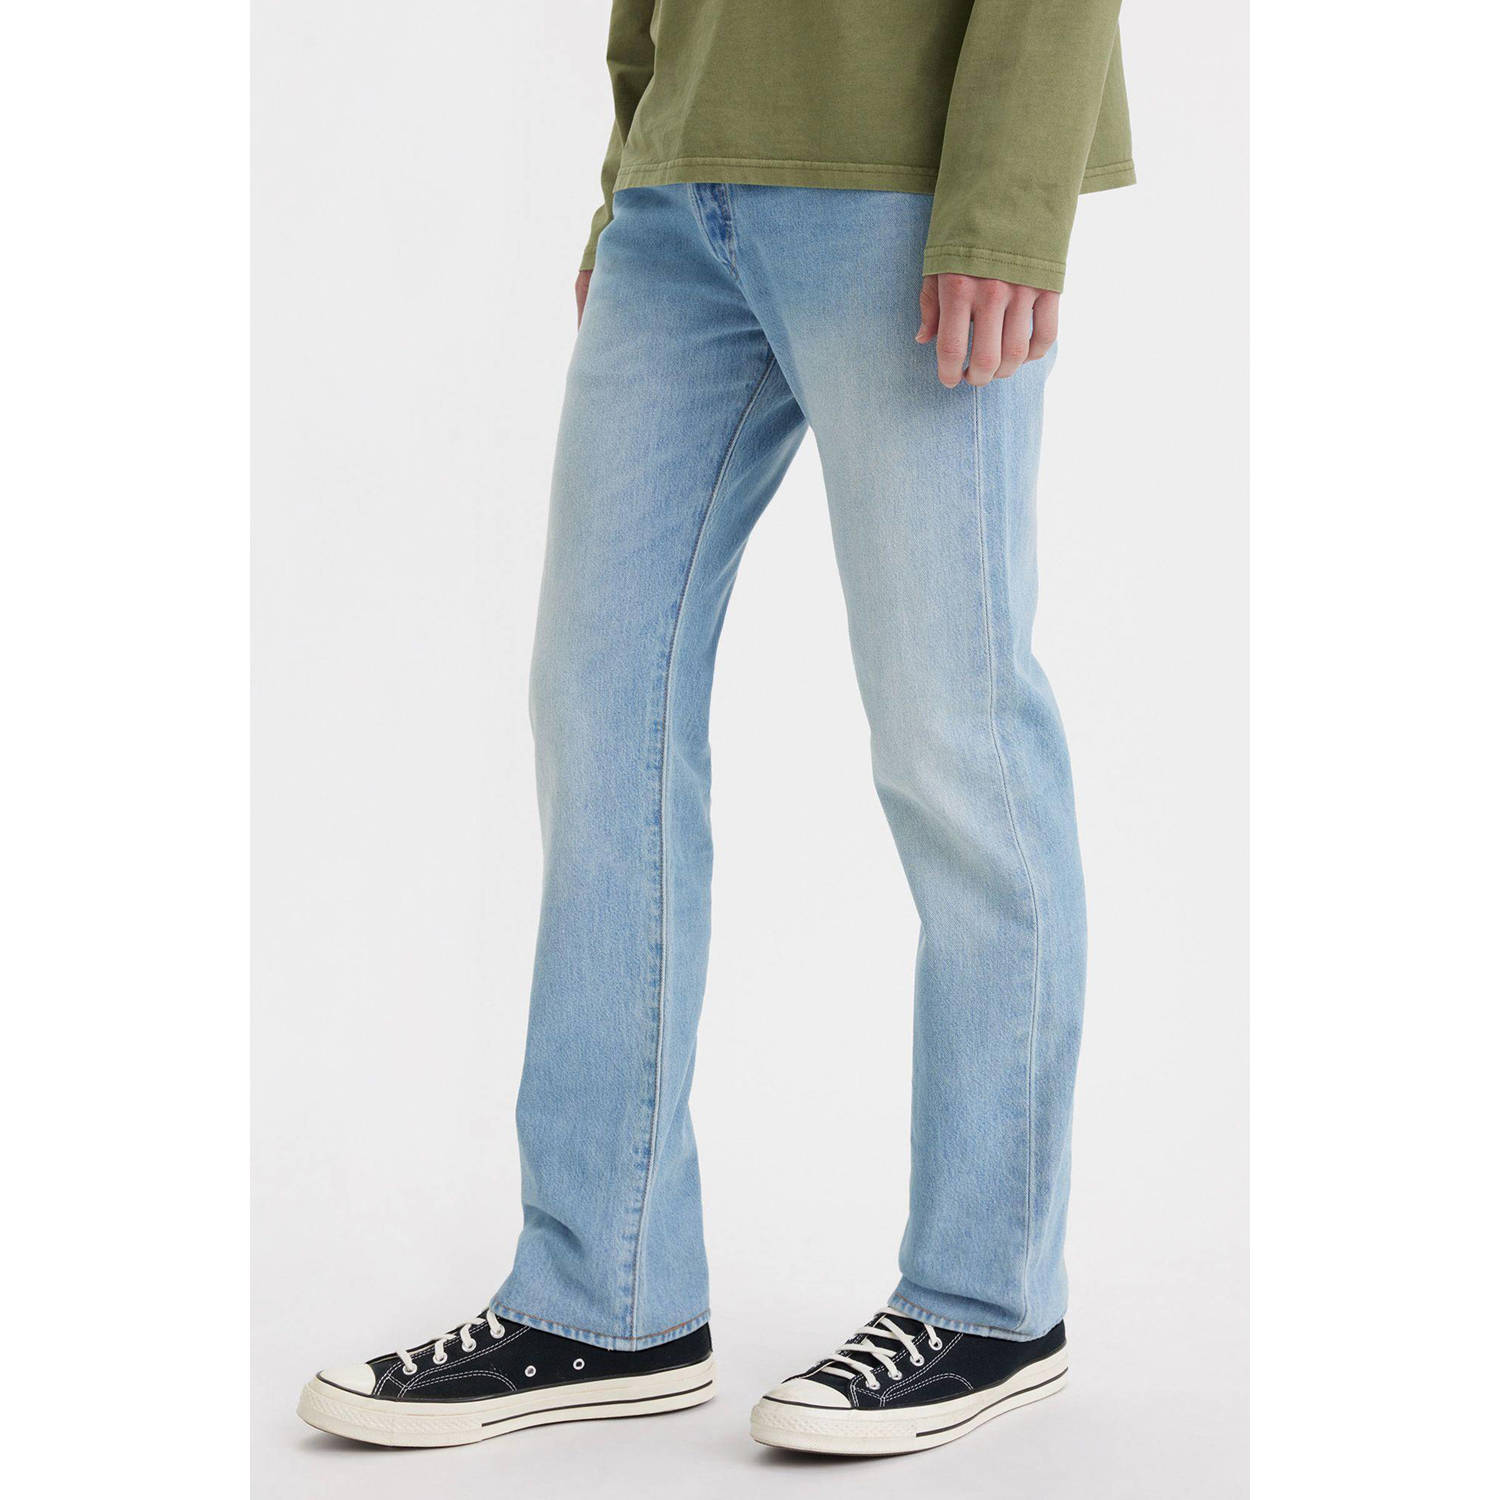 Levi's 501 straight fit jeans let it happen